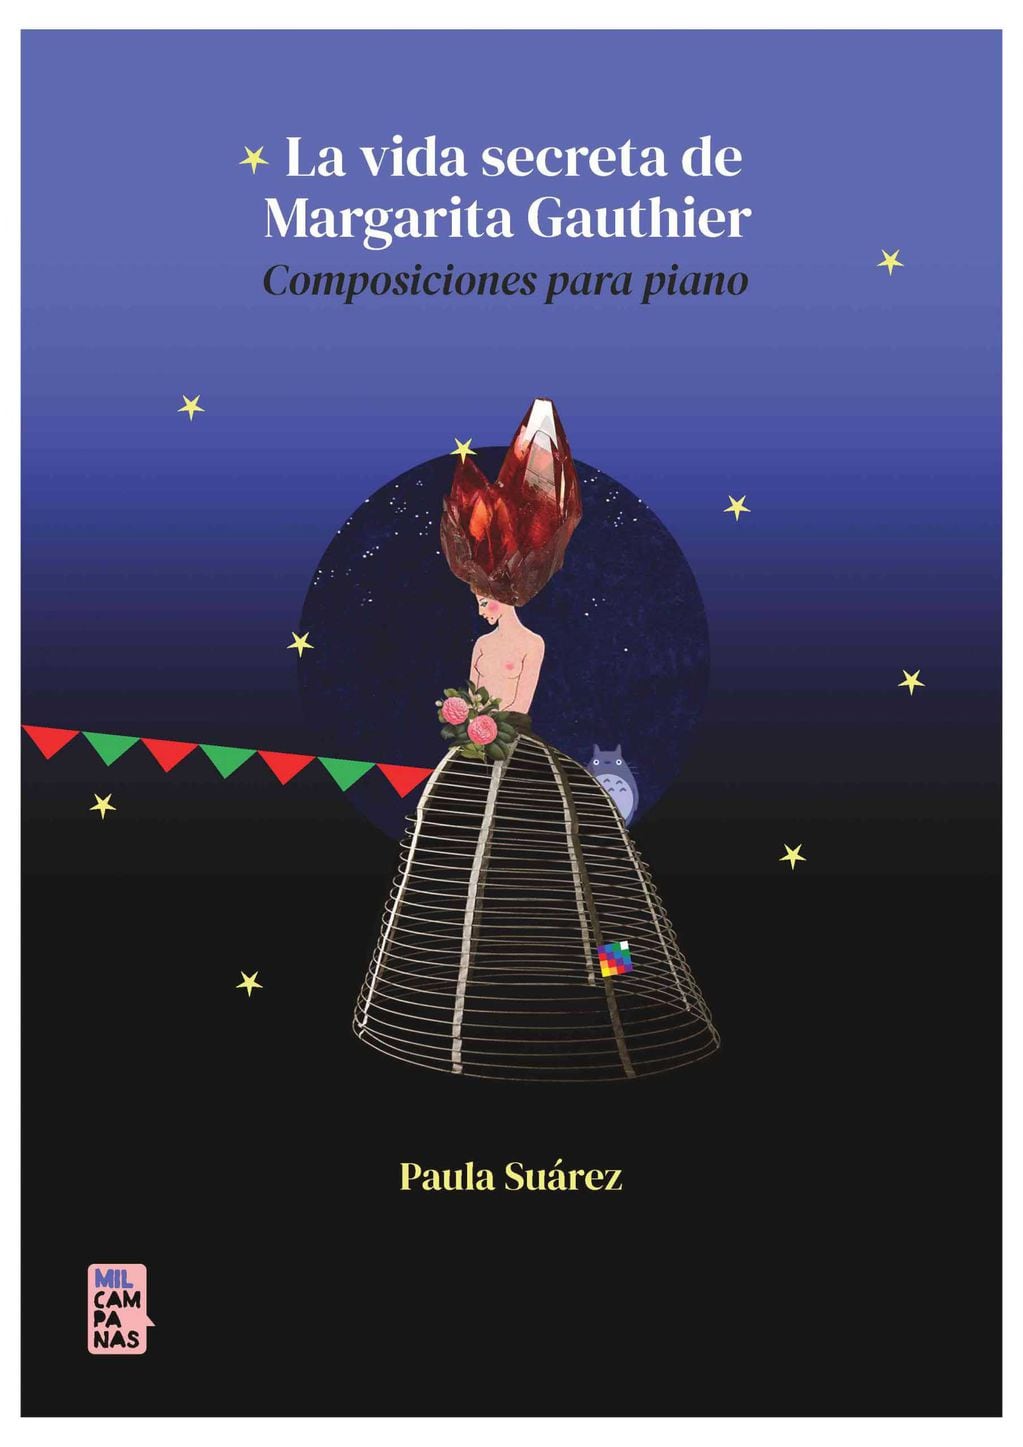 La pianista Paula Suárez recupera en este libro de composiciones musicales propias, la figura de Margarita Gauthier, célebre personaje literario del S.XIX que llegó a aparecer en nuestros tangos.